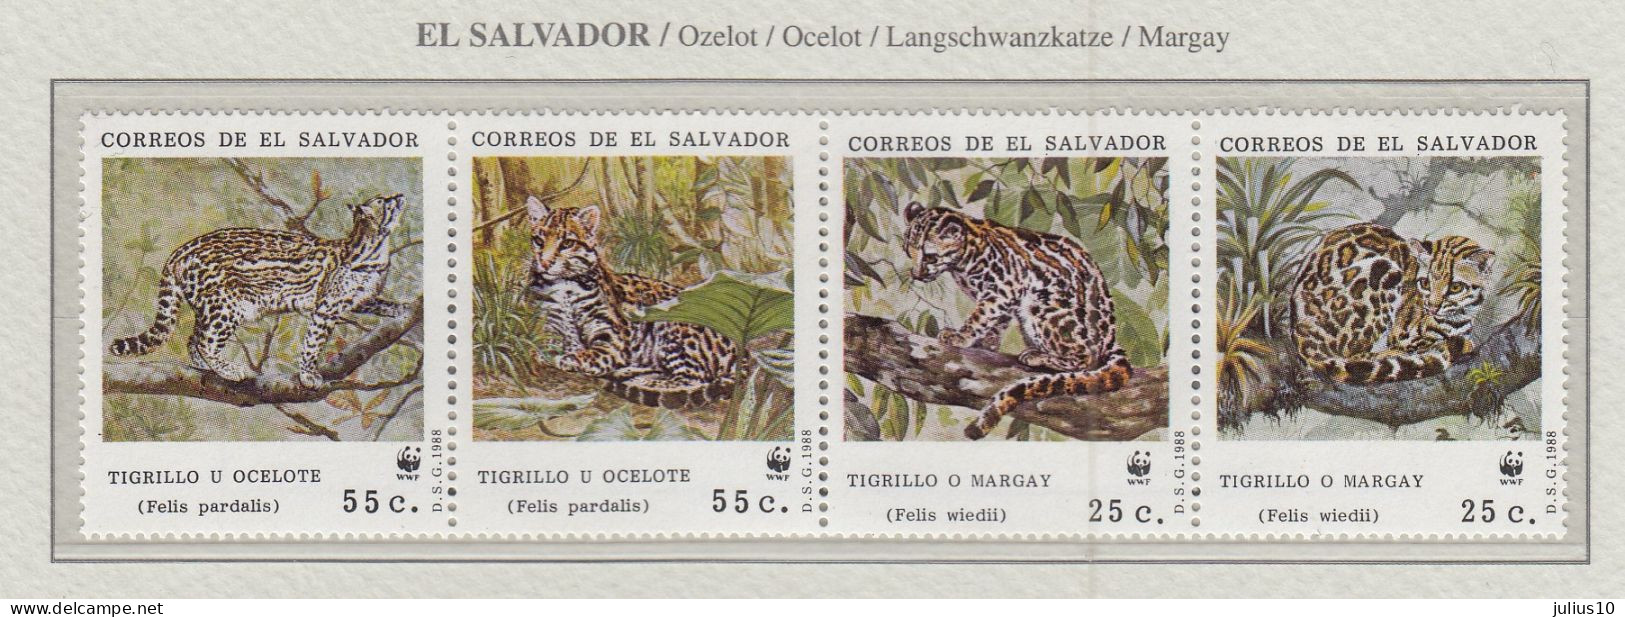 EL SALVADOR 1988 WWF Ocelote Mi 1734-1737 MNH(**) Fauna 746 - Felini